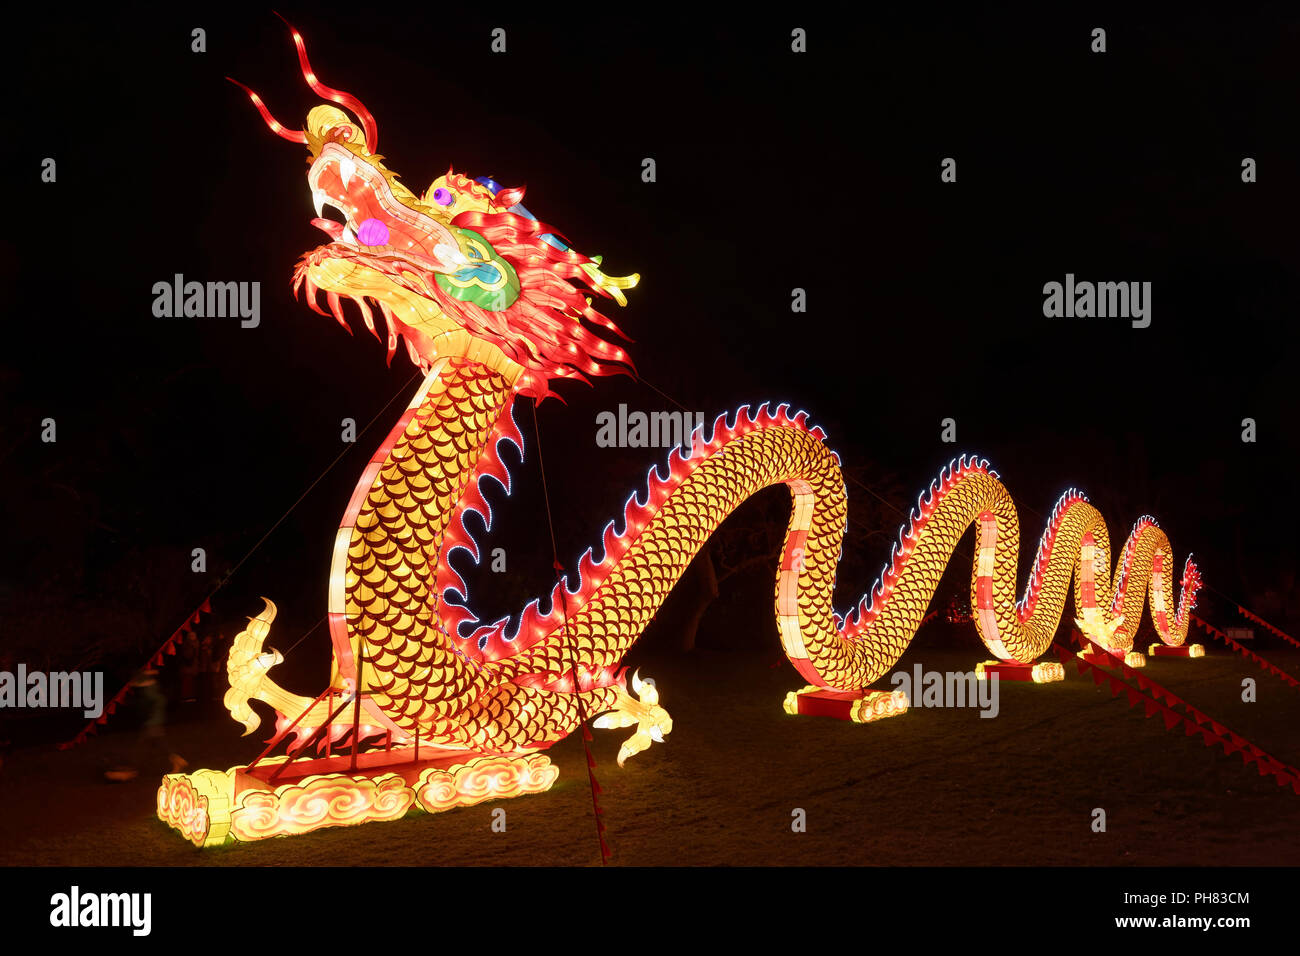 Dragón Chino, papel ilustración, brillante, de color, luz, instalación China Light Festival, Zoológico de Colonia, Colonia. Foto de stock